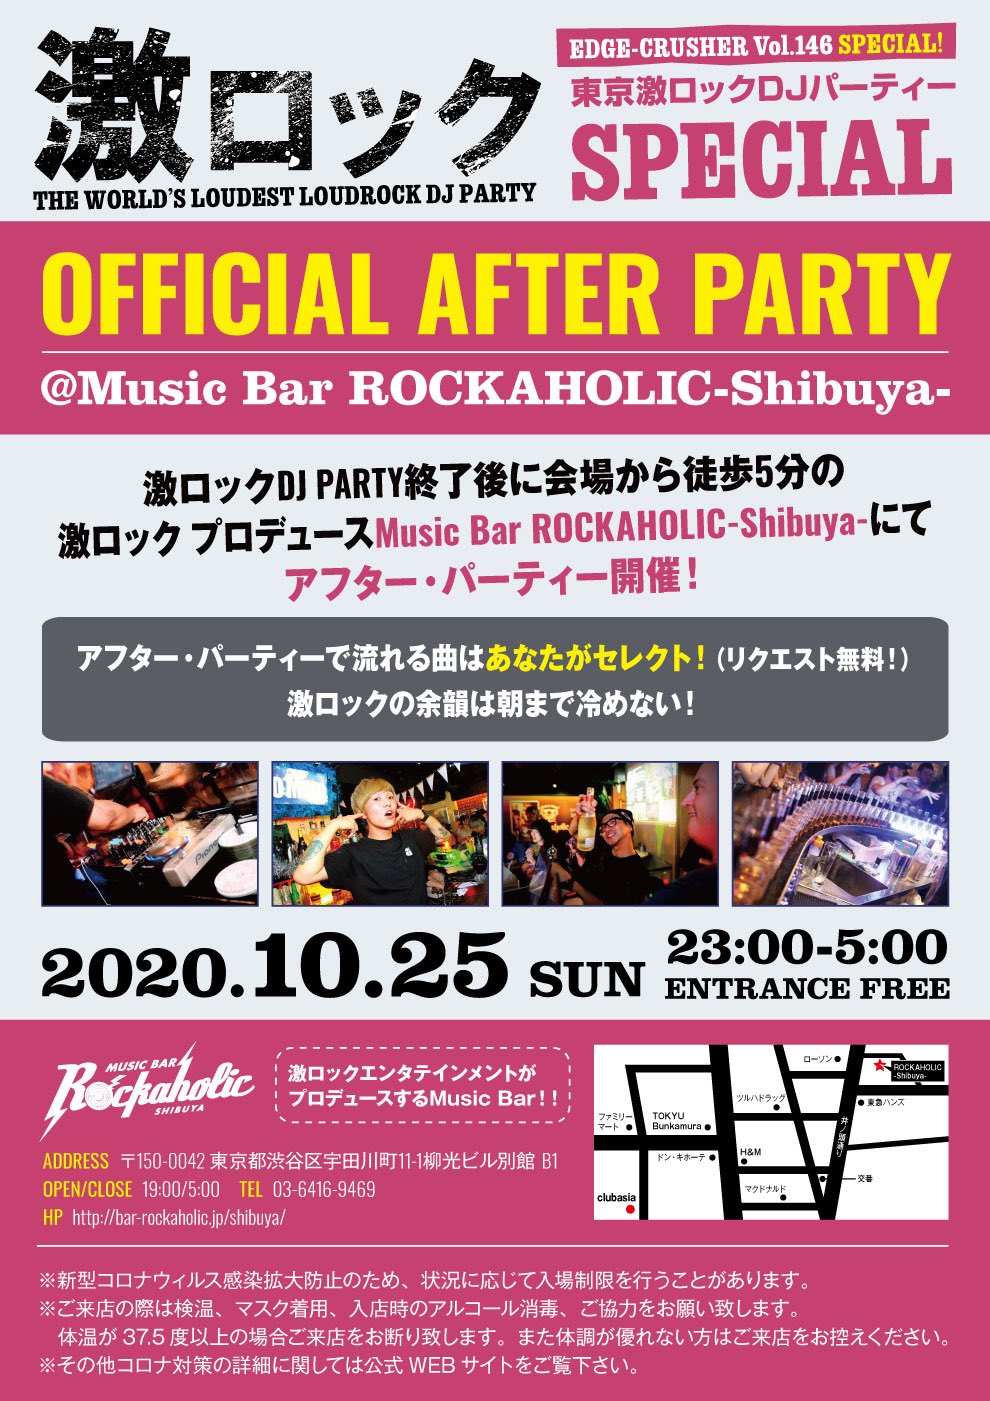 https://bar-rockaholic.jp/shibuya/blog/20201016_105301.jpg